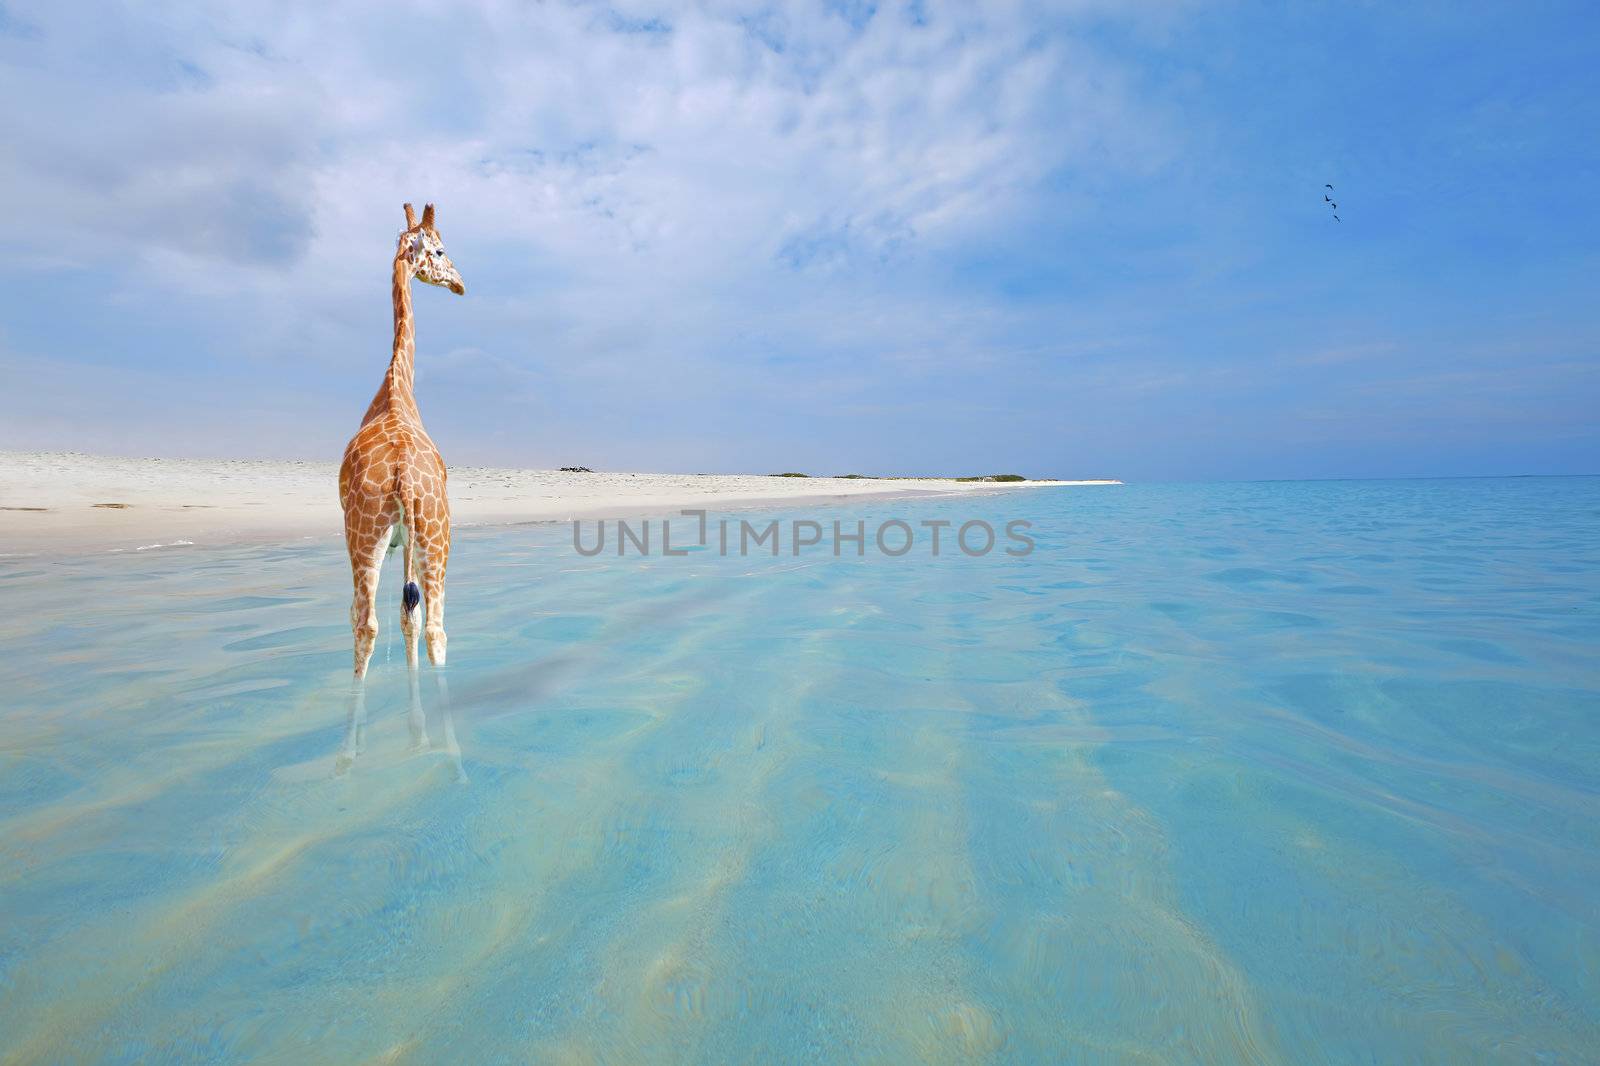 Giraffe on vacation by kjorgen